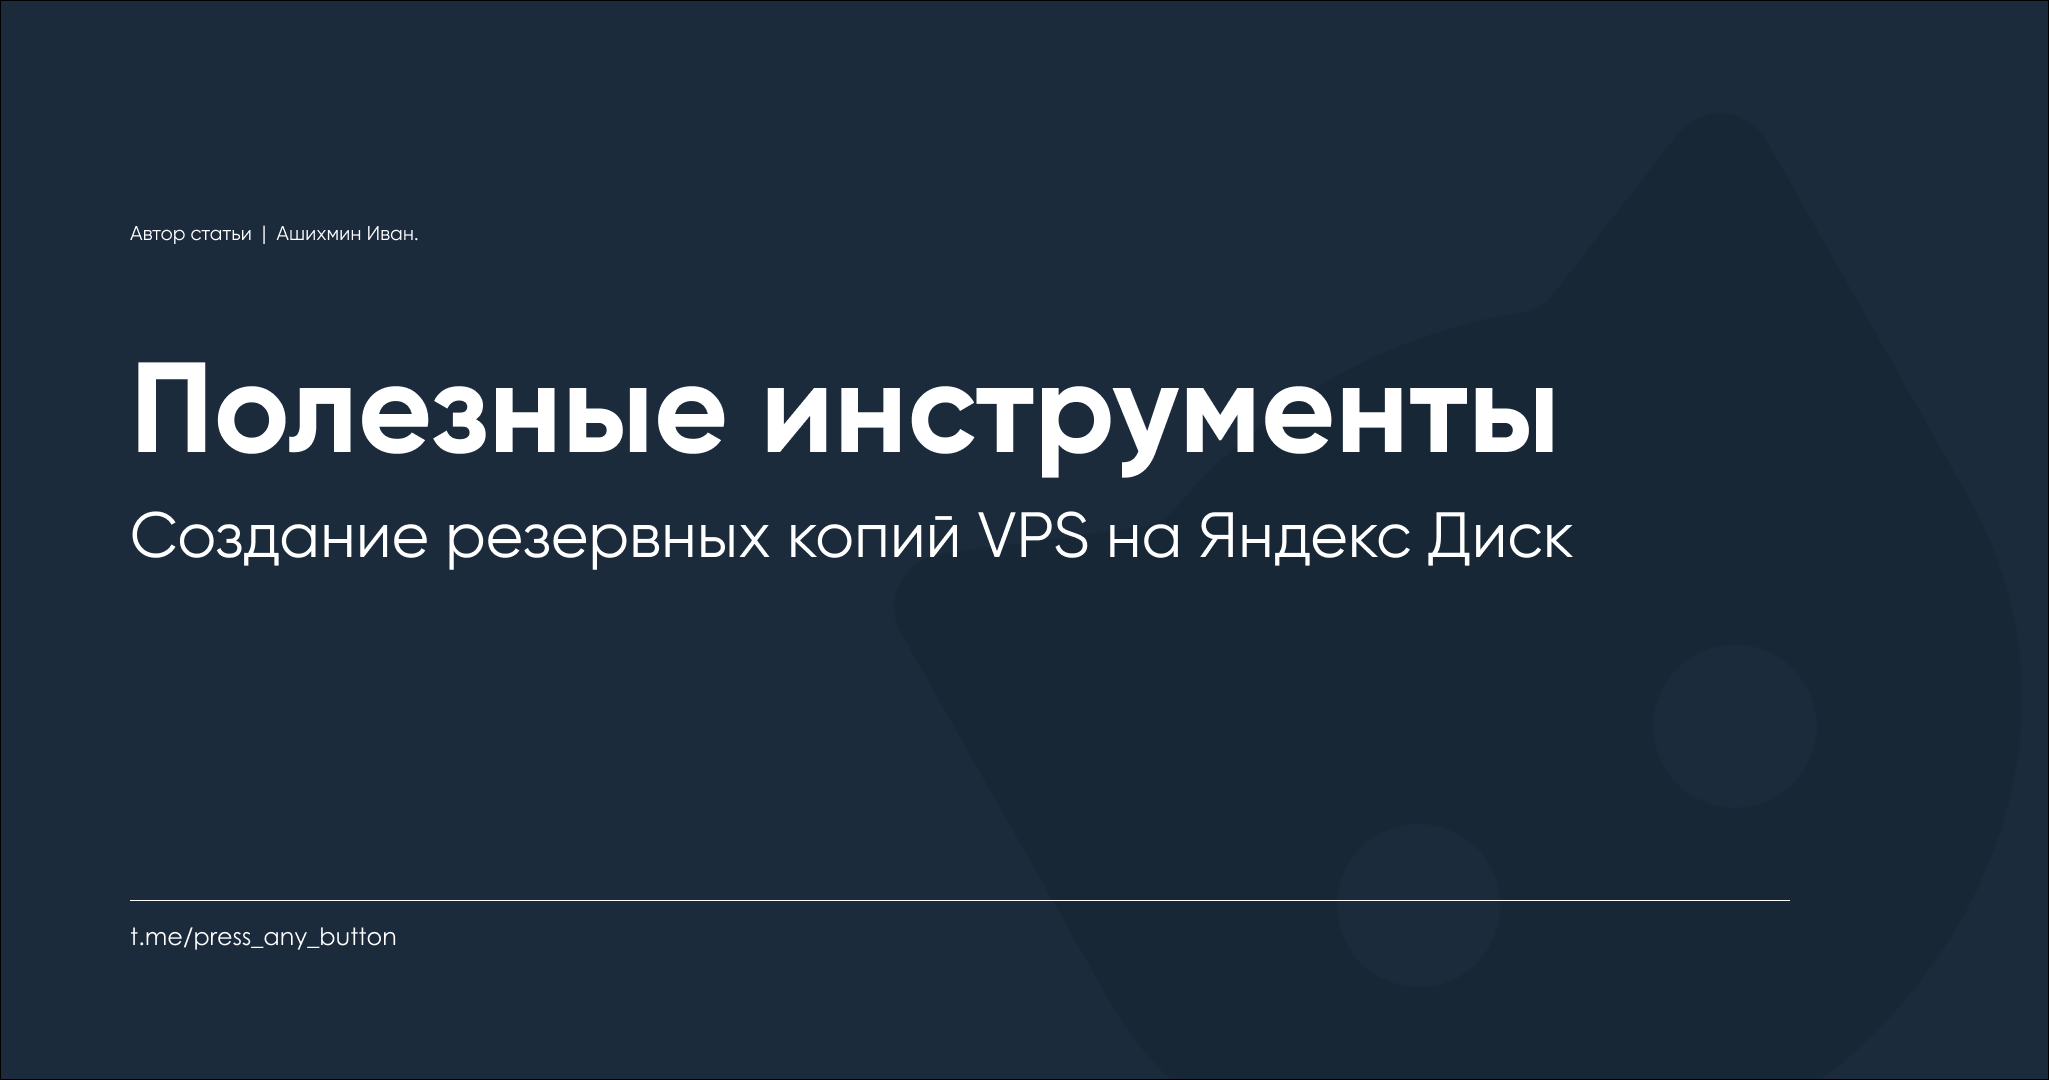 Создание резервных копий VPS на Яндекс Диск